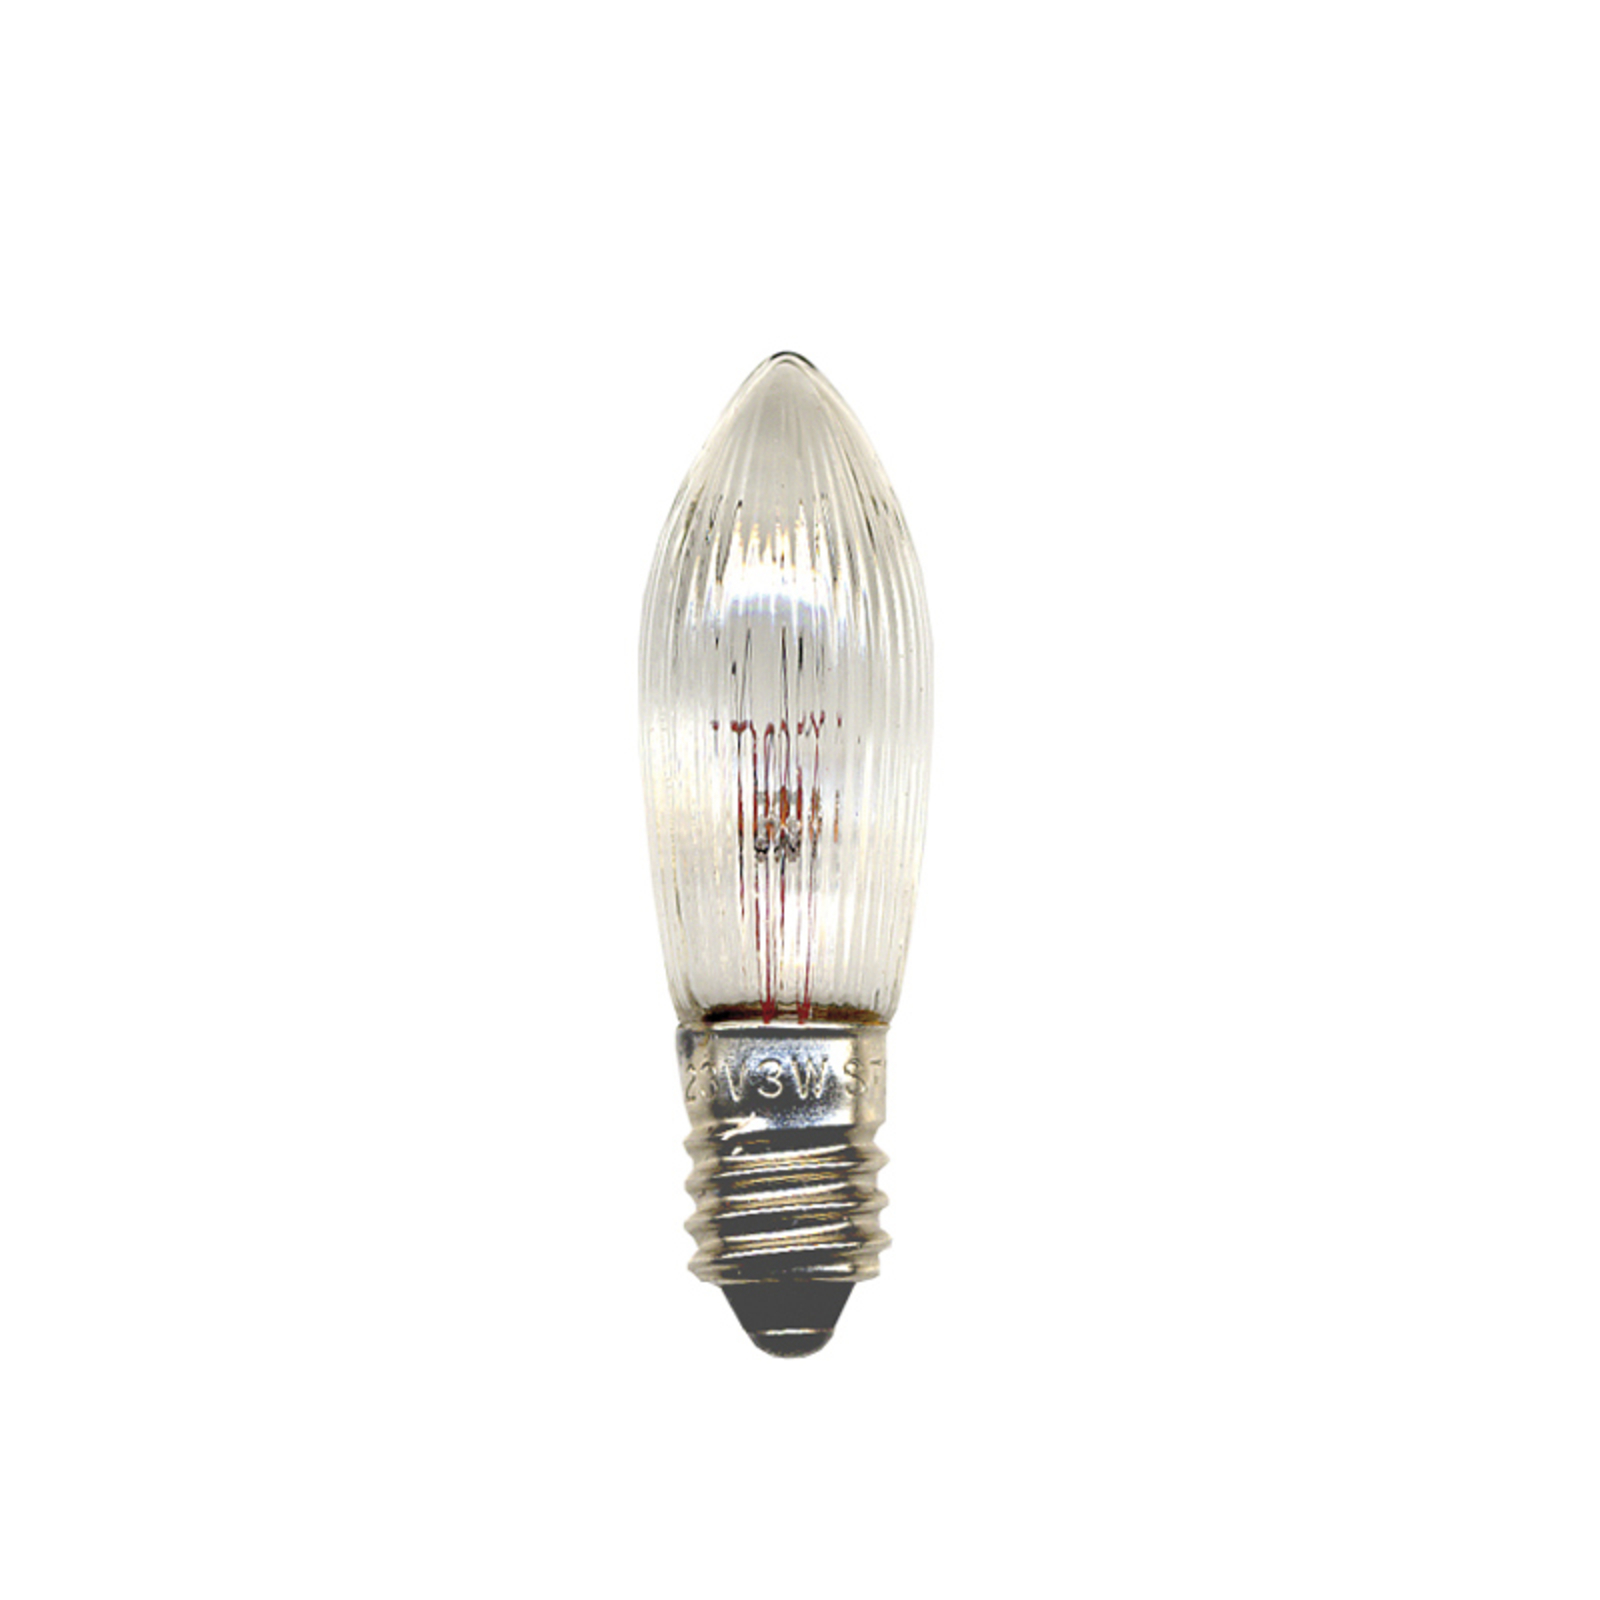 E10-12V-reservelamp van 2,4W, 3 st, kaarsvorm